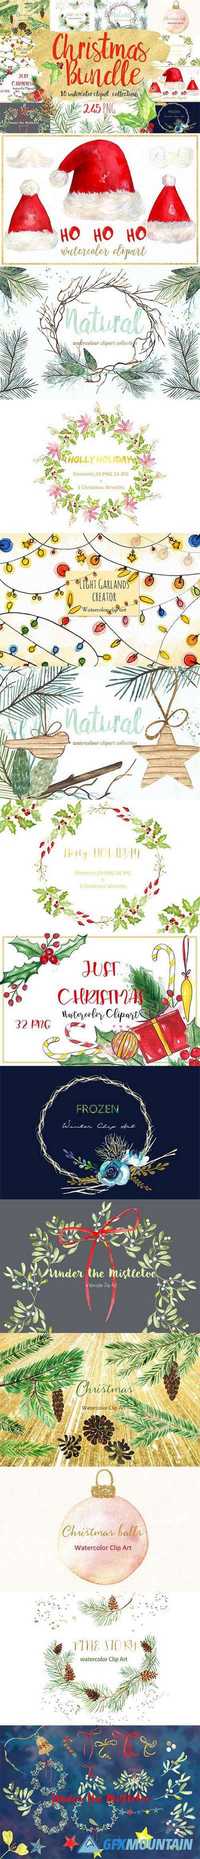 Christmas watercolor clipart bundle - 1053189